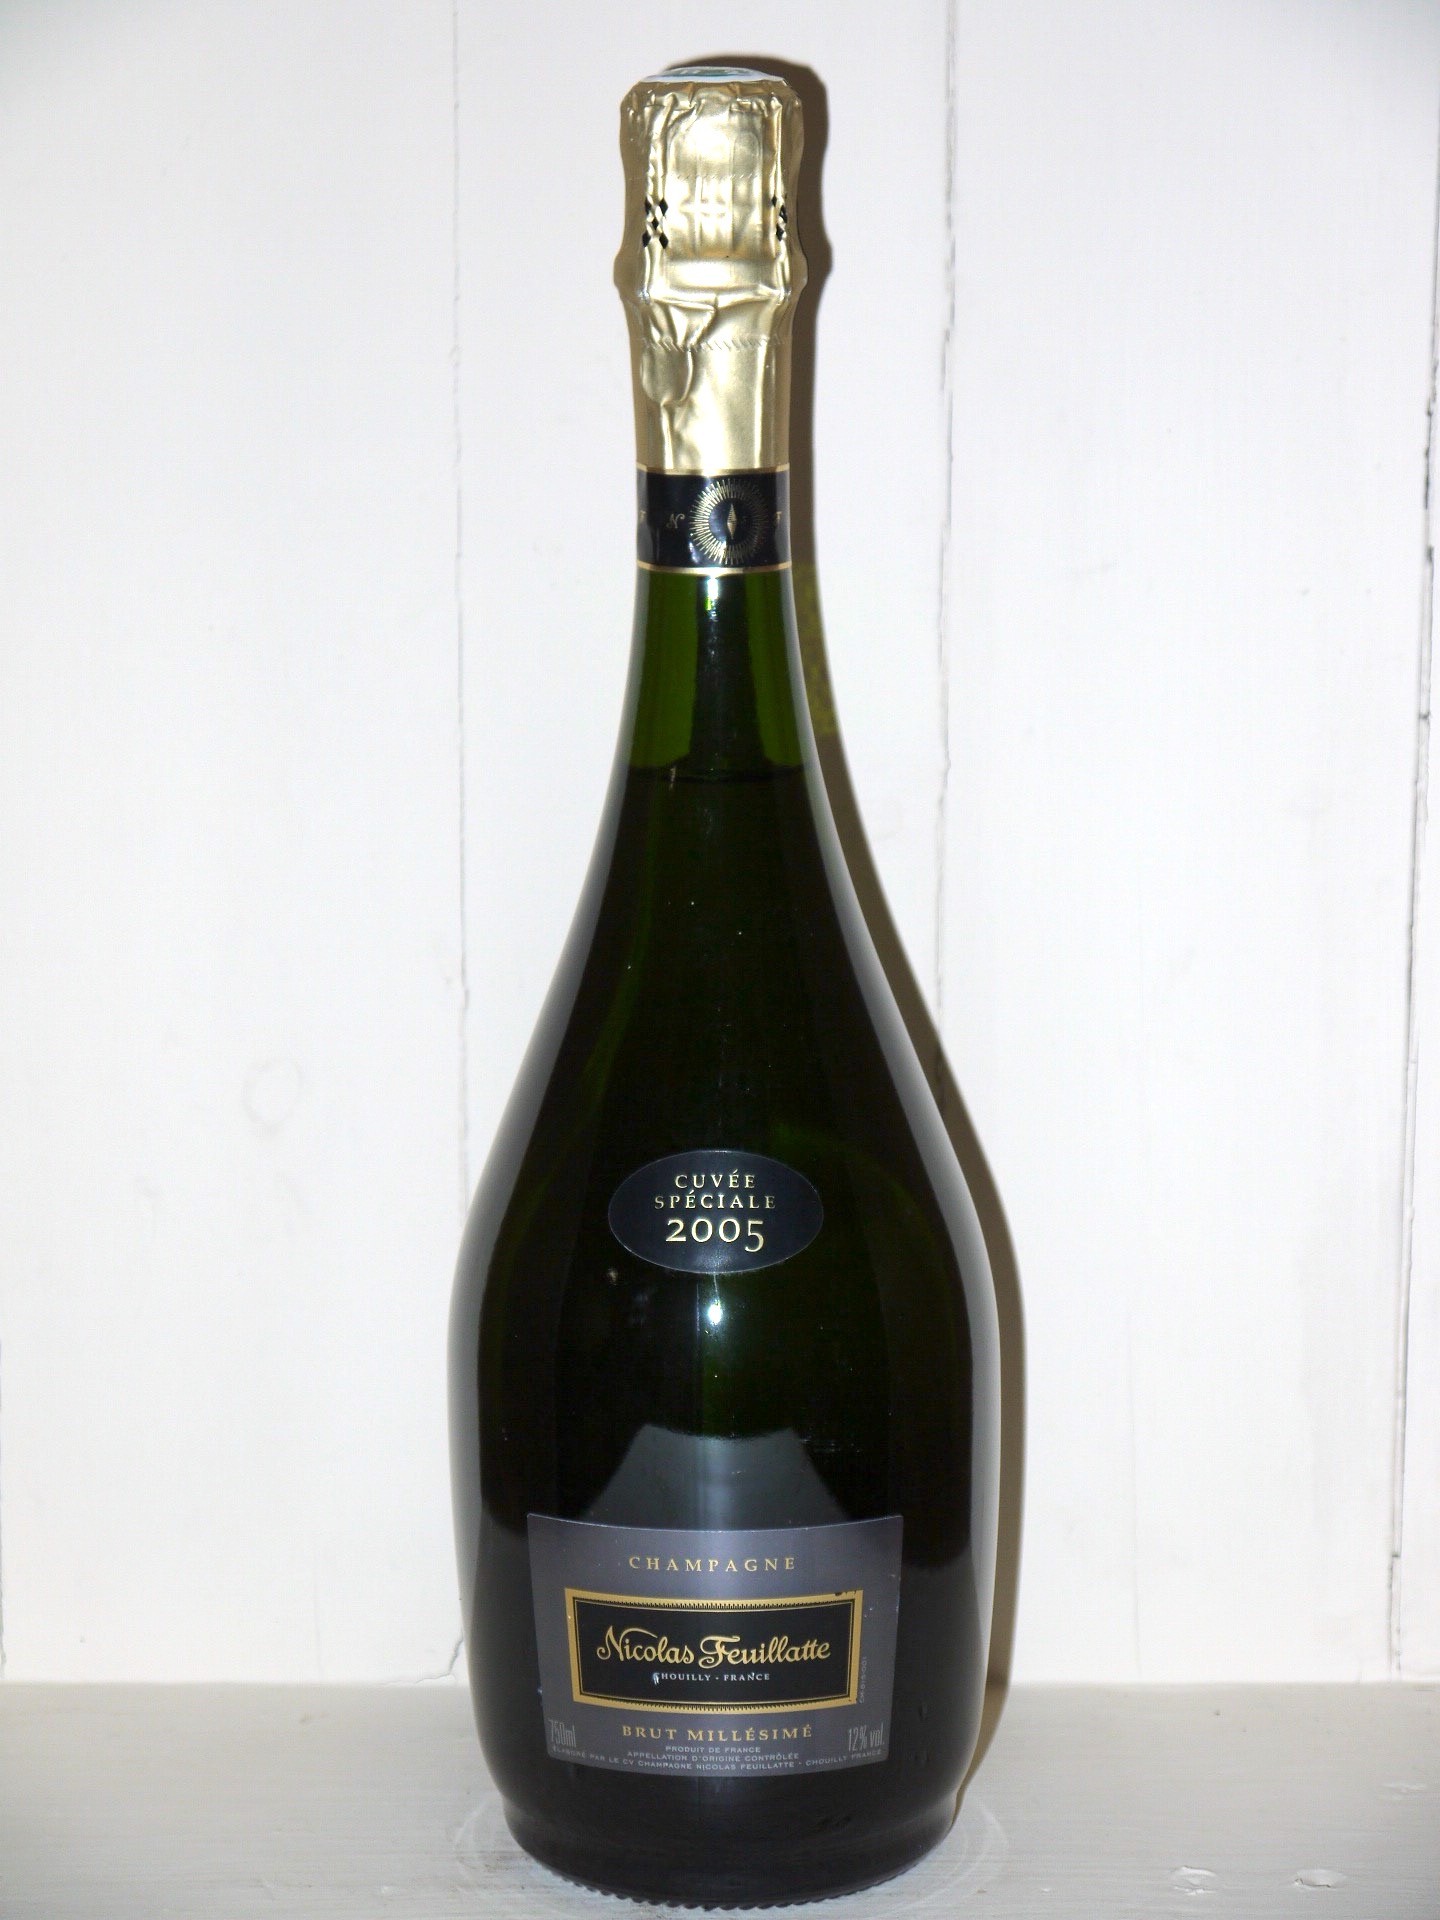 Champagne Nicolas Feuillatte Bottles Paradise in 2005 de Au Spéciale\